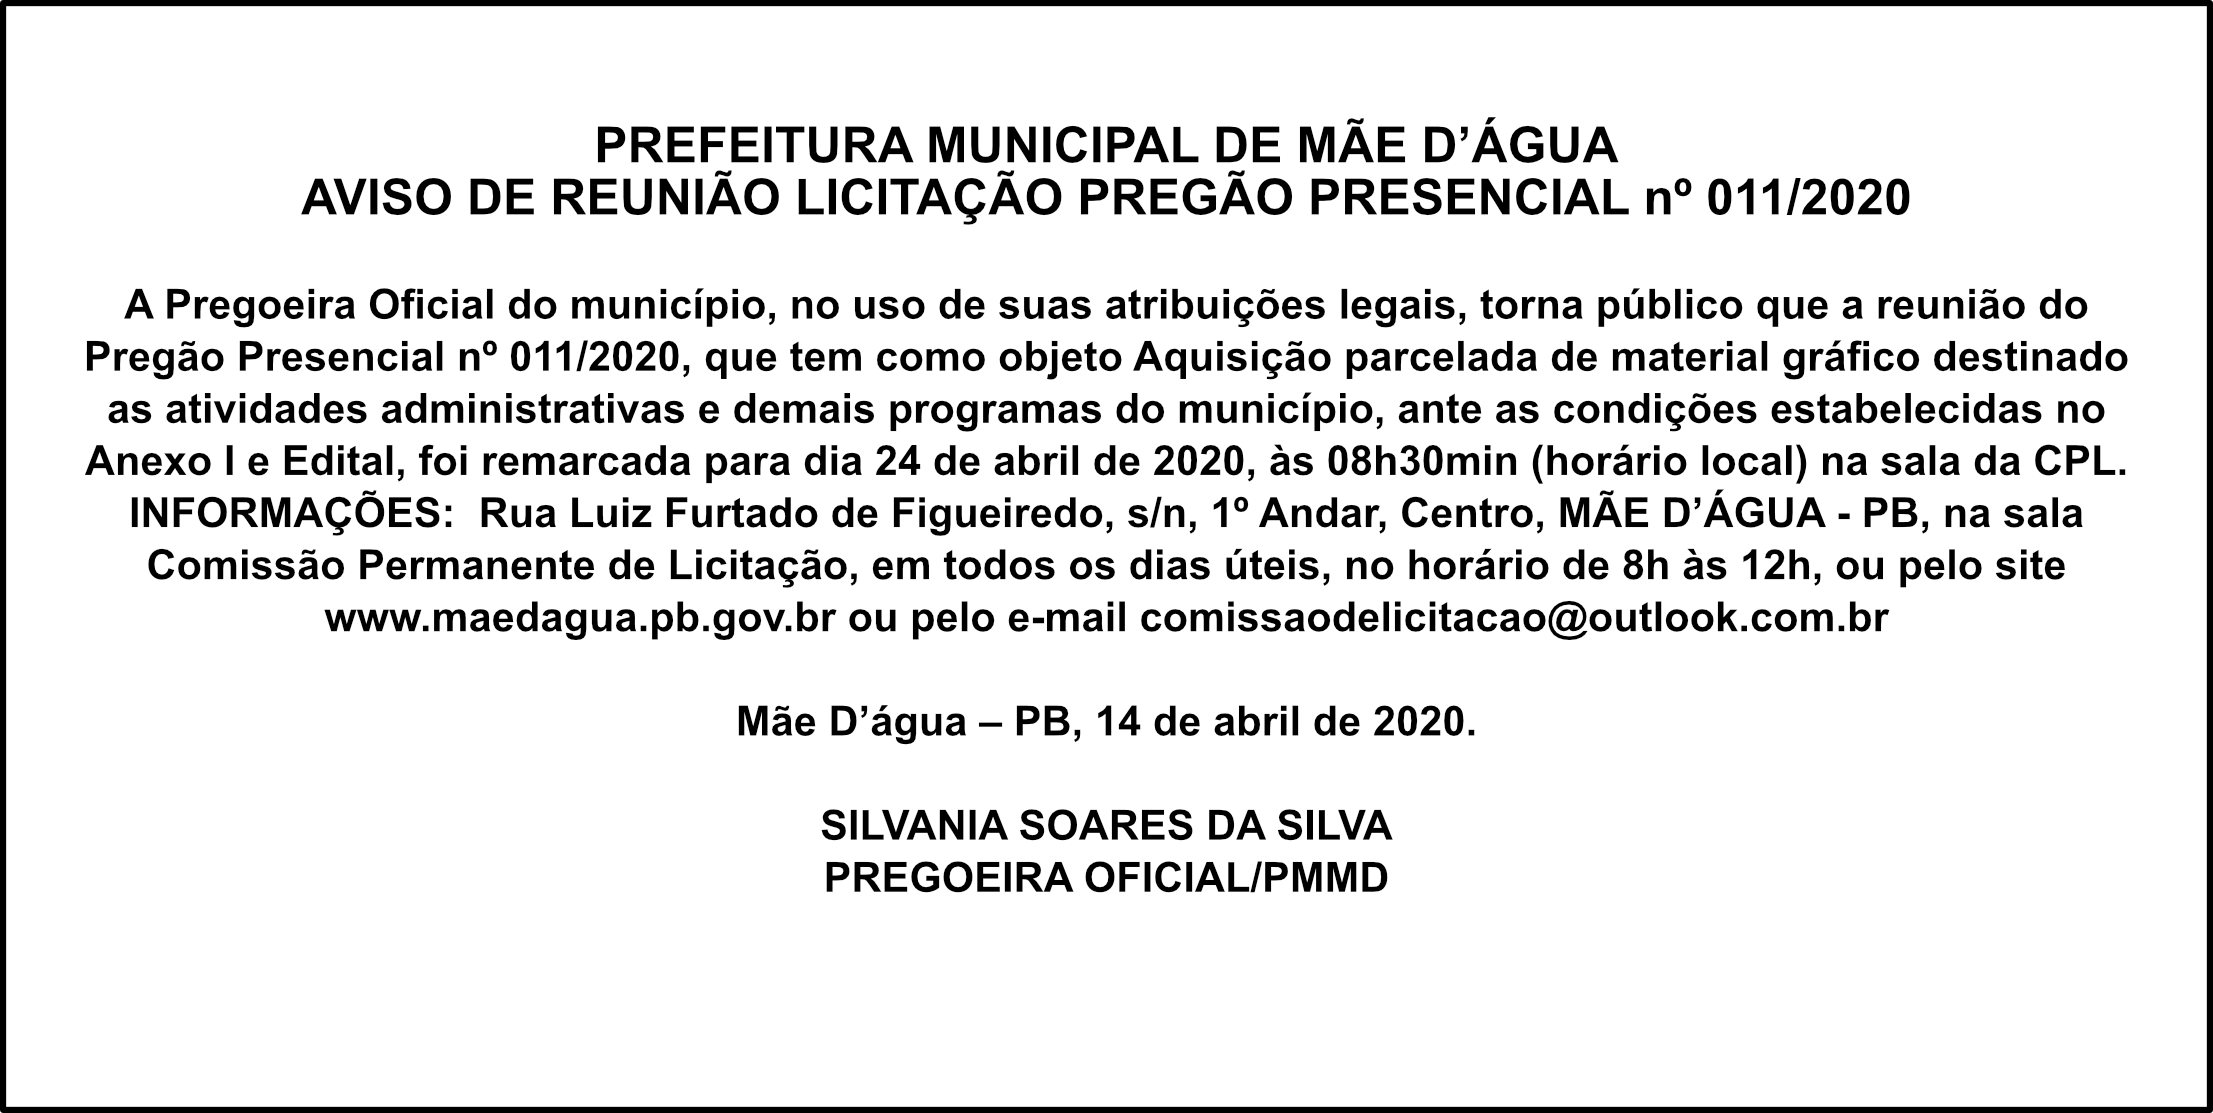 PREFEITURA DE MÃE D’ÁGUA – AVISO DE REUNIÃO – PREGÃO PRESENCIAL nº 011/2020